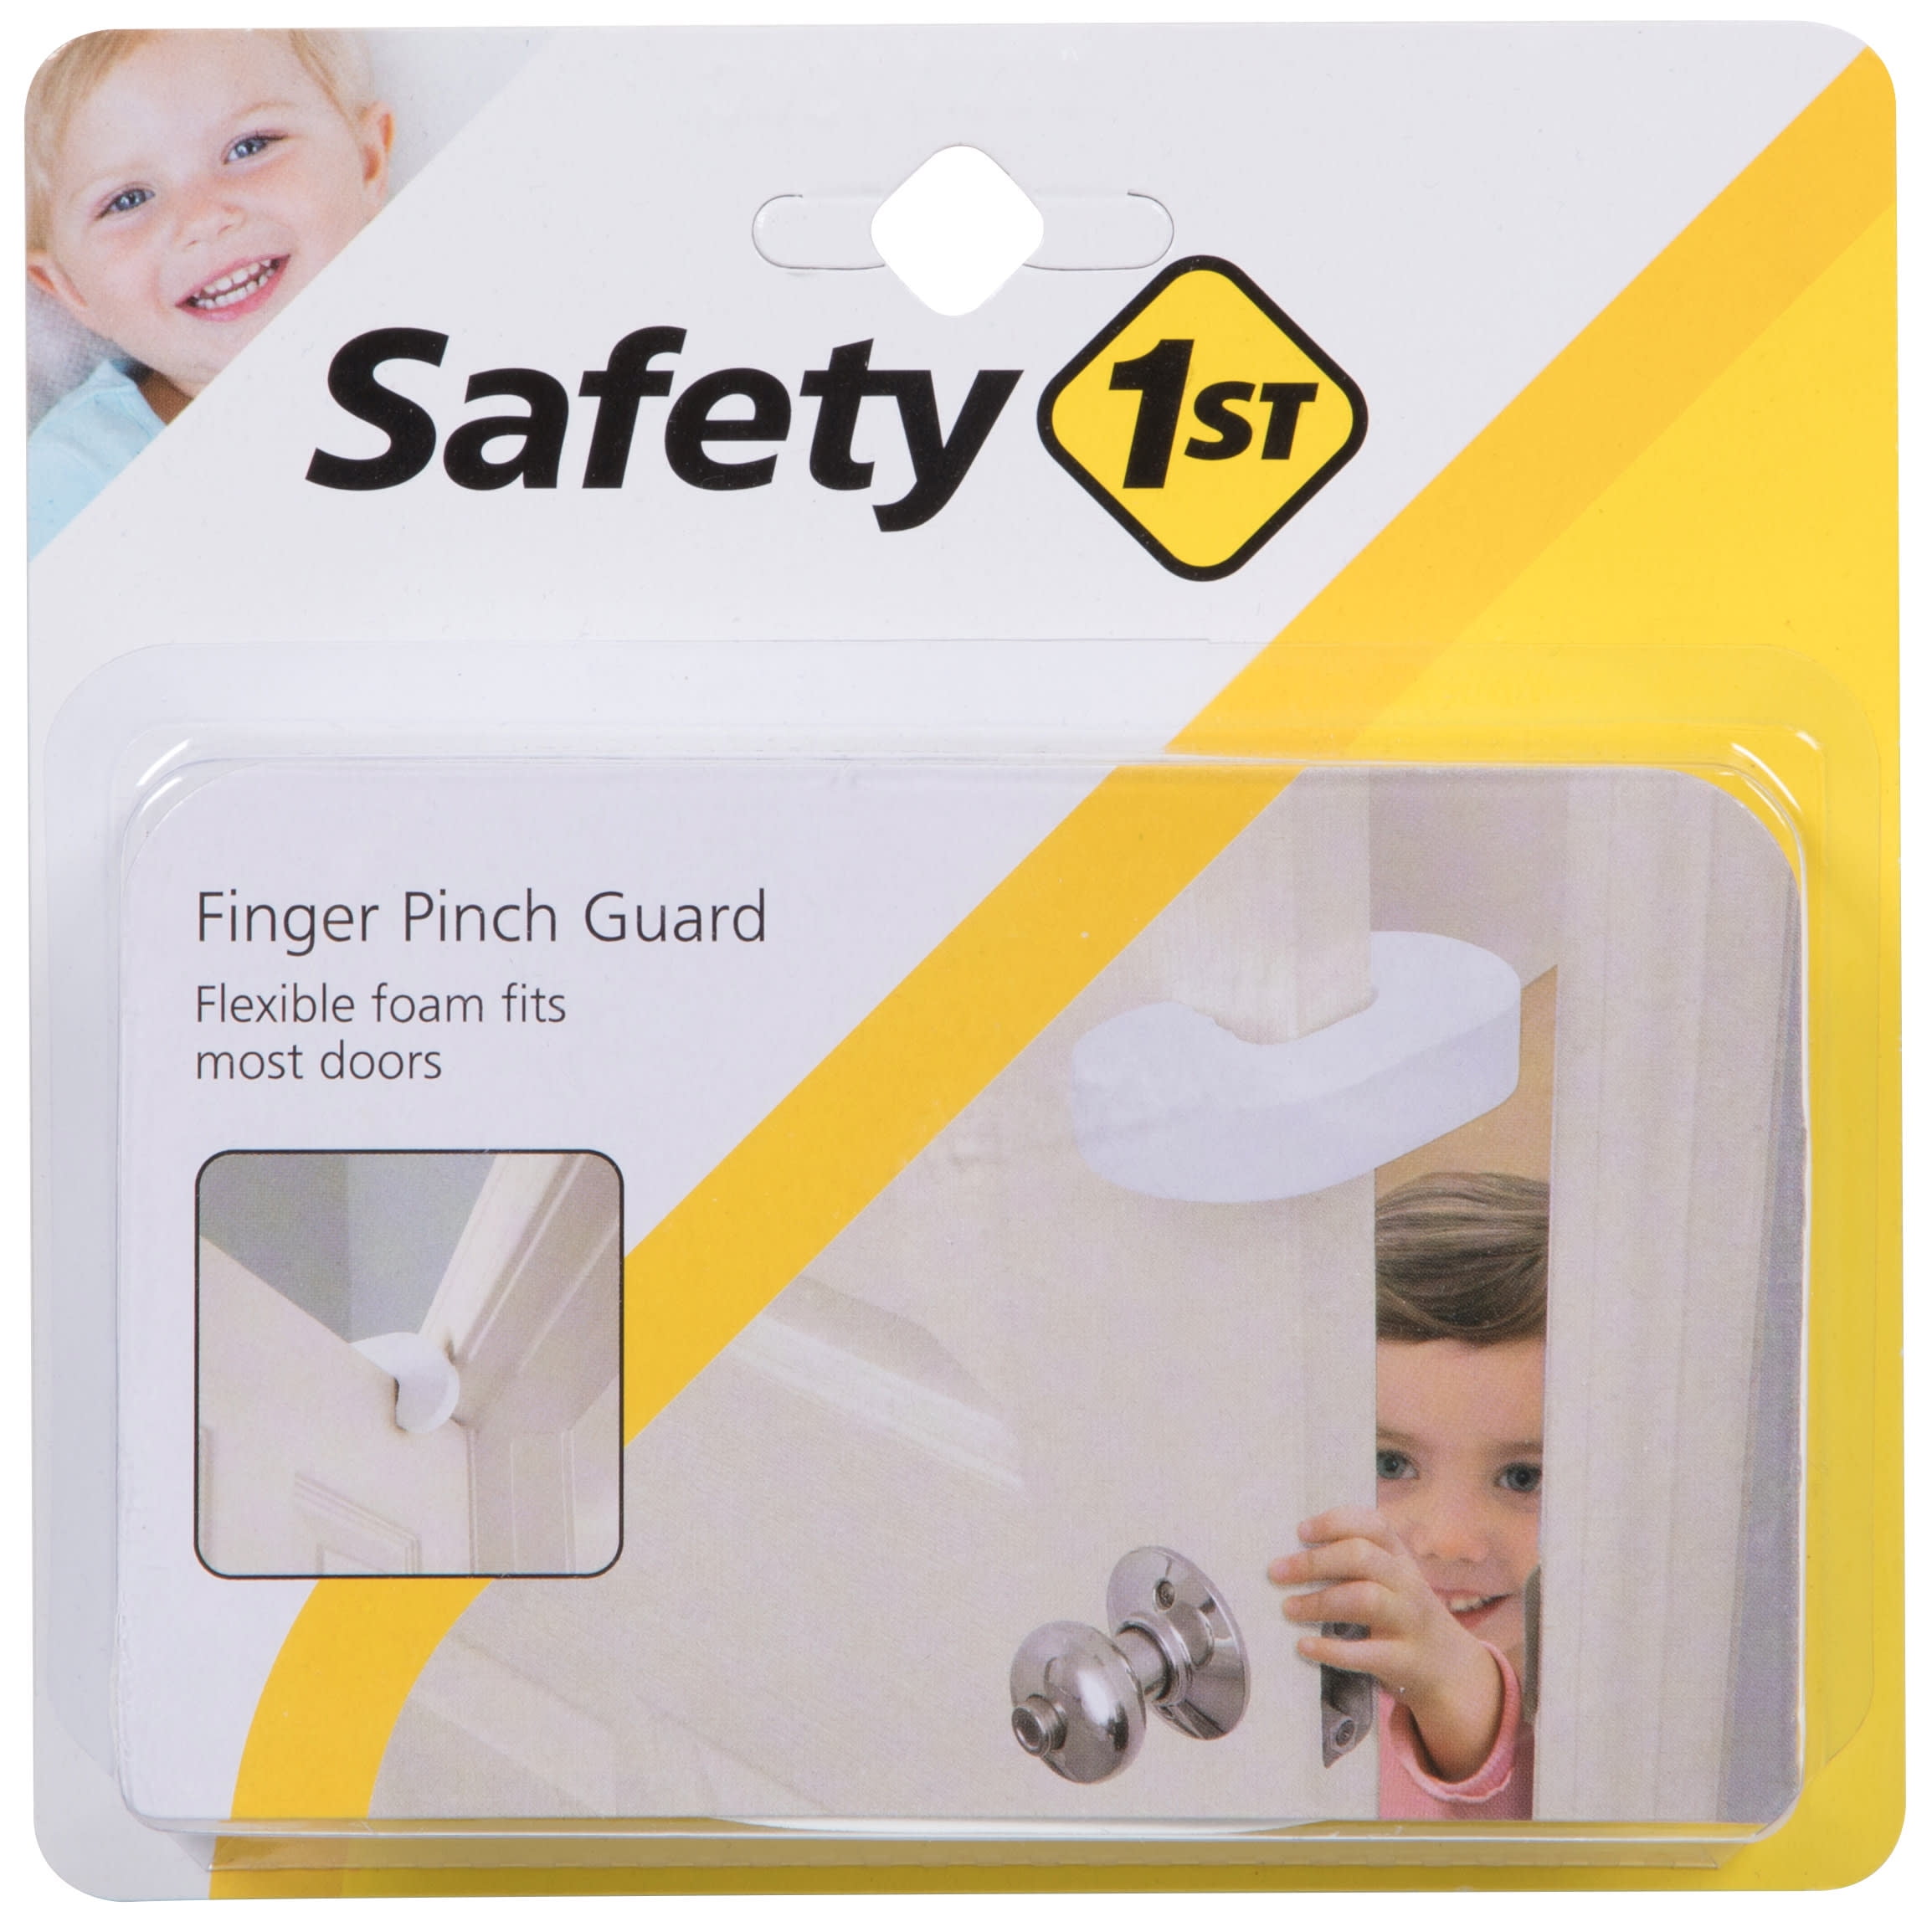 DOOR MONKEY Child Proof Door Lock & Pinch Guard - For Door Knobs & Lever  Handles- Easy To Install-No Tools Or Tape Required - Baby Safety Door Lock  For Kids - Very